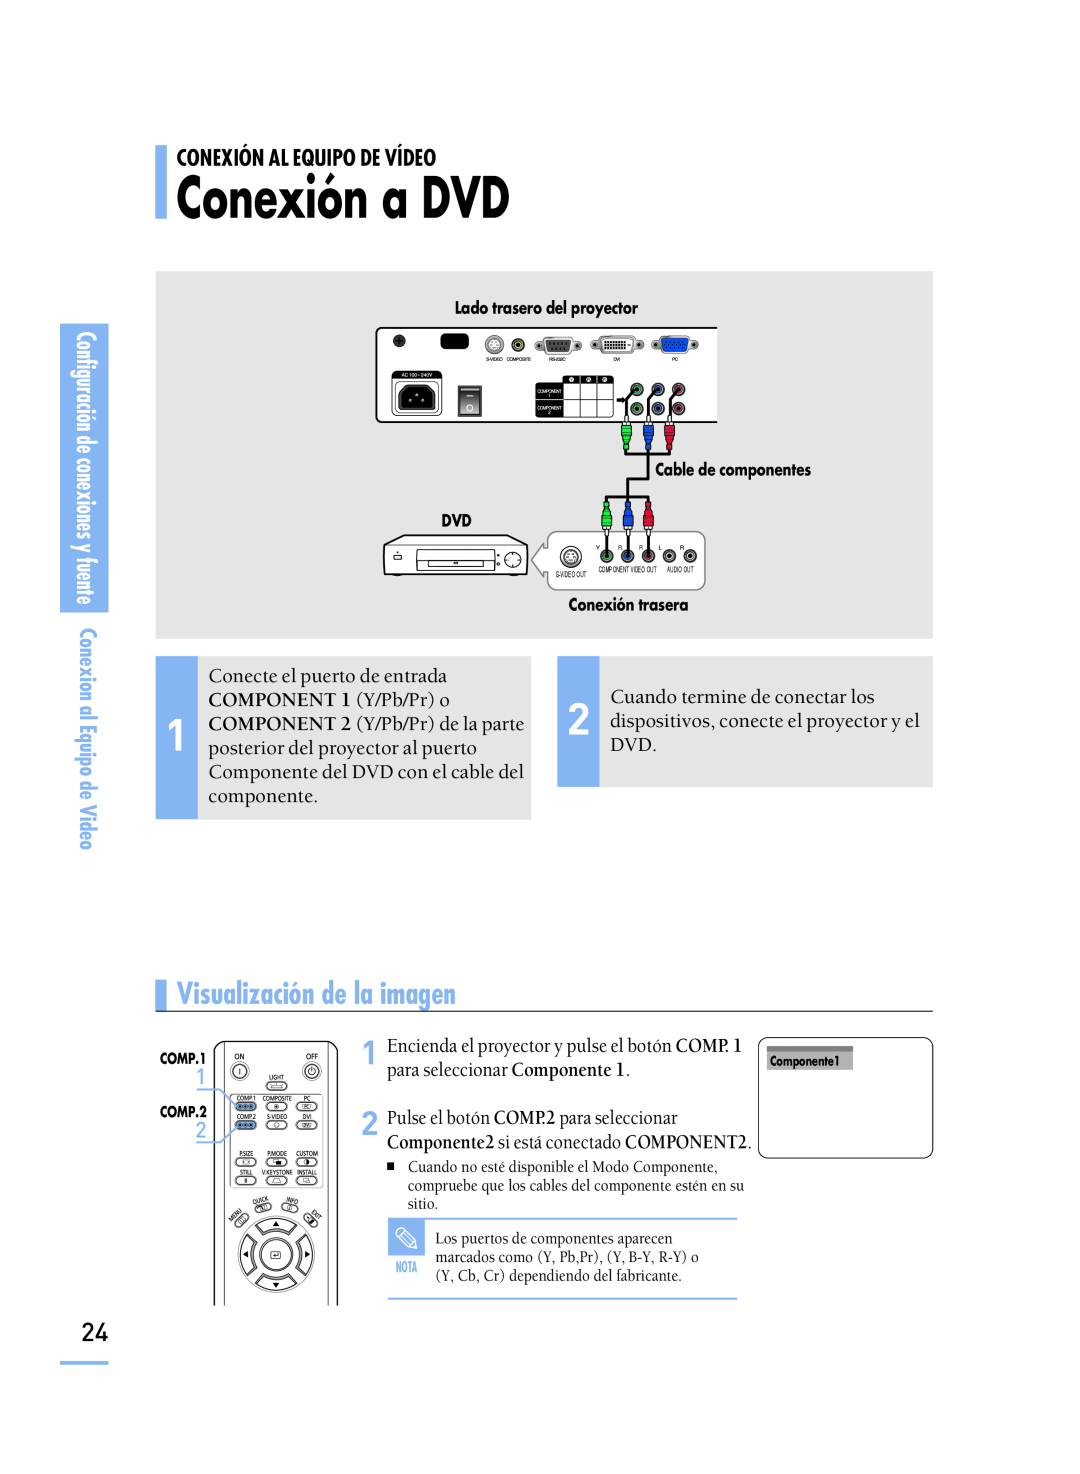 Samsung SPH800BEMX/EDC Conexión a DVD, al Equipo de Video, Conecte el puerto de entrada, COMPONENT 1 Y/Pb/Pr o, COMP.1 